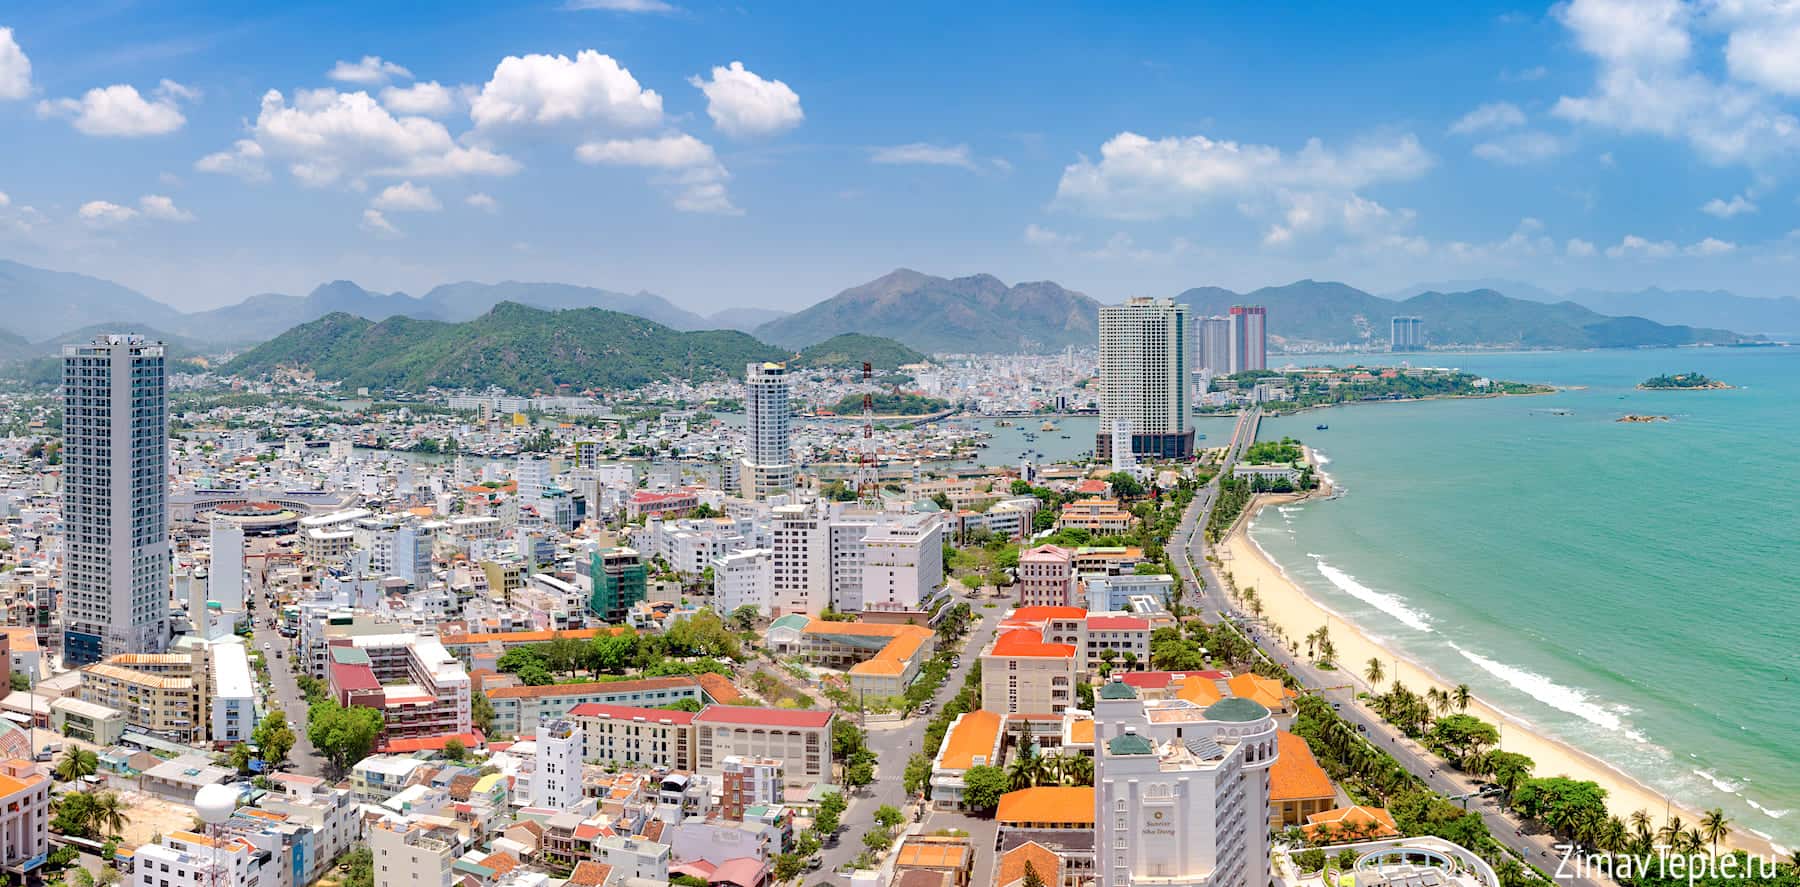 Каталог недвижимости Нячанга Вьетнам актуальные цены